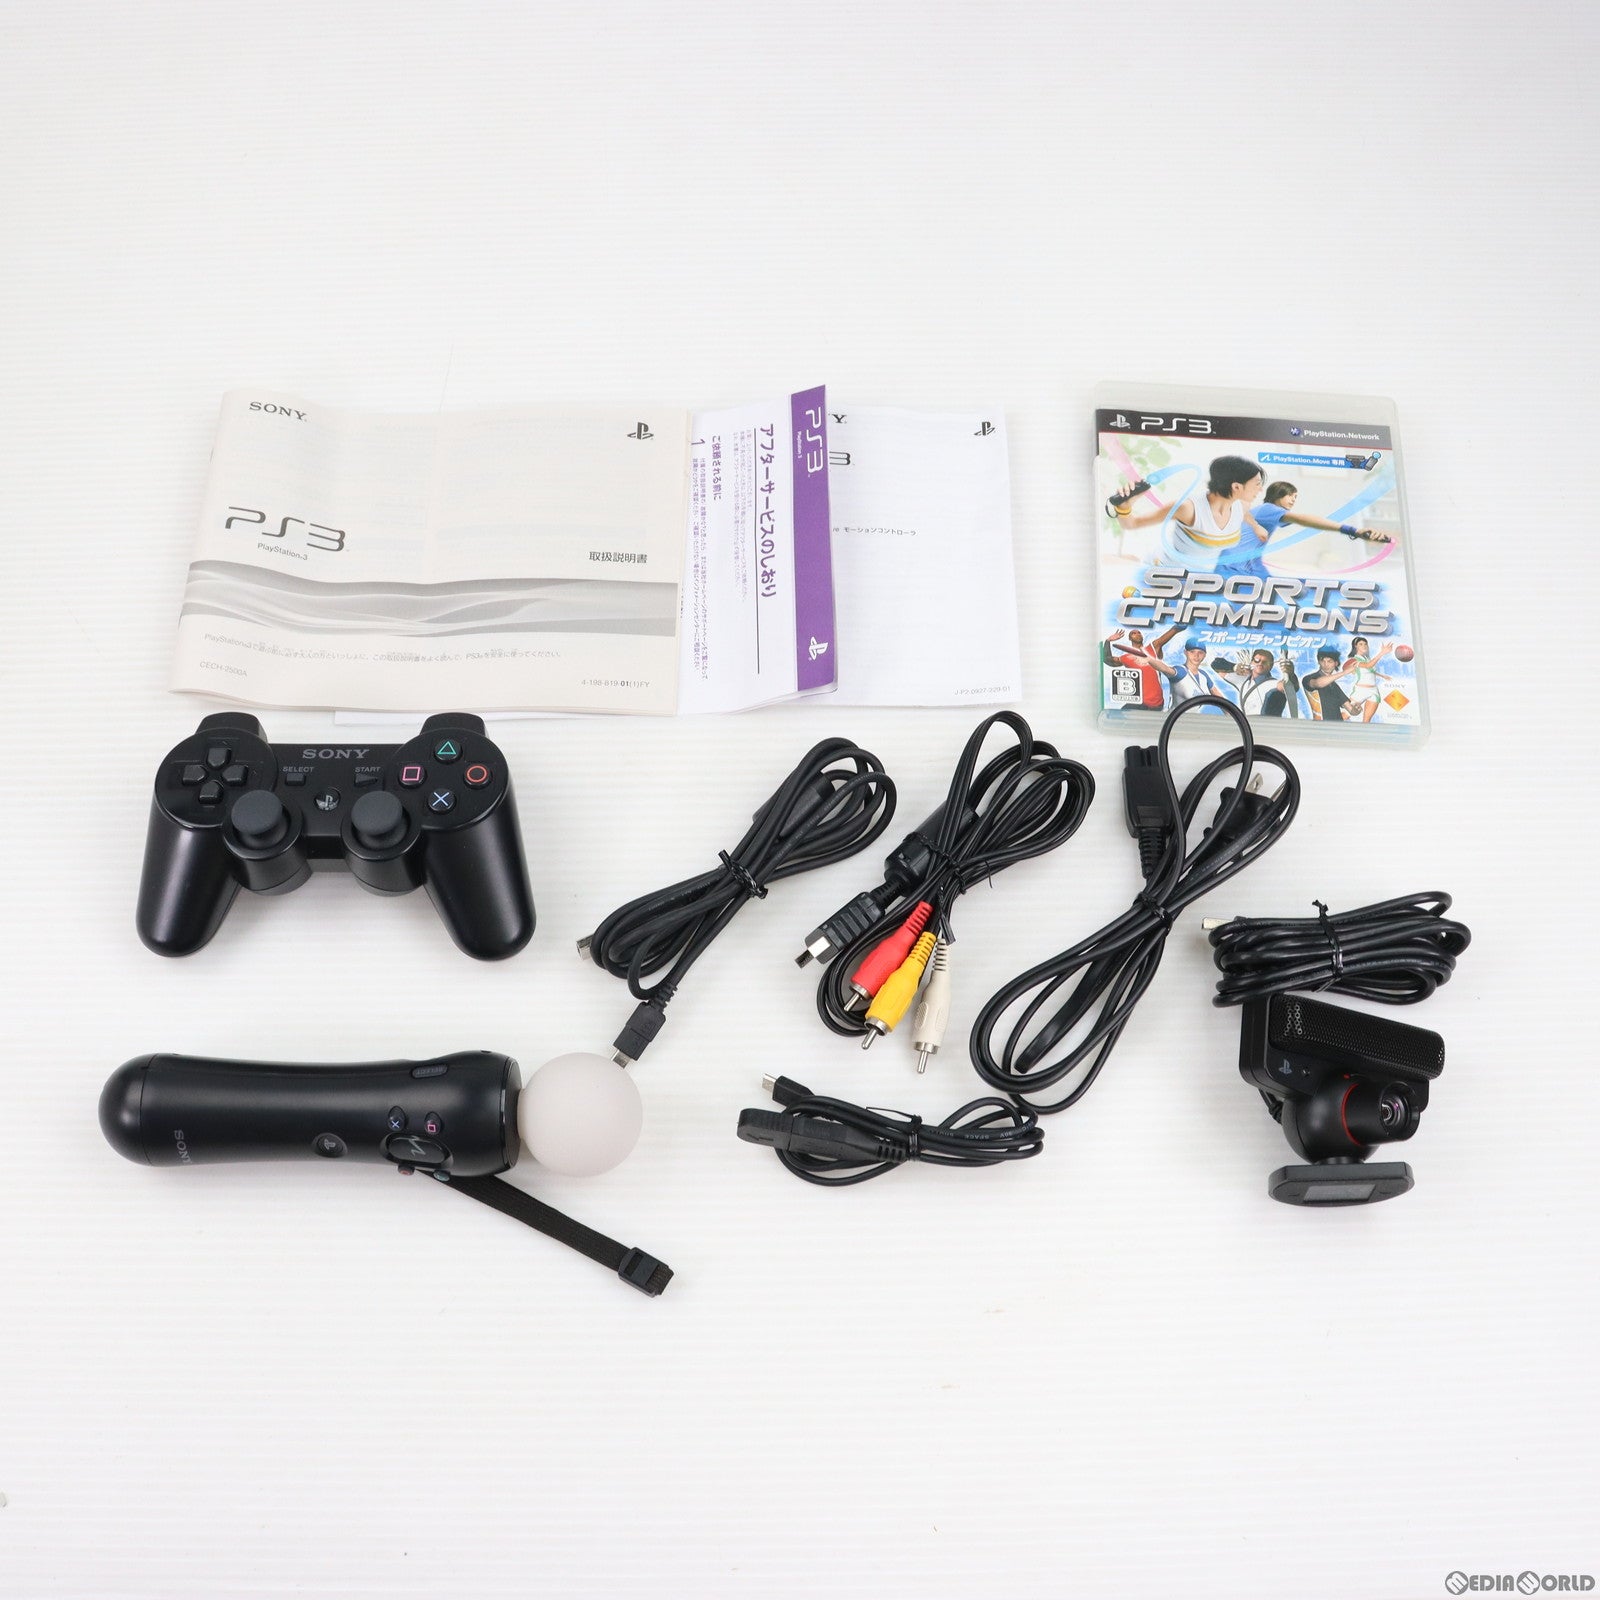 中古即納】[PS3](本体)PlayStation3 with PlayStation Move スポーツチャンピオン バリューパック チャコール・ブラック  160GB(CEJH-10015)